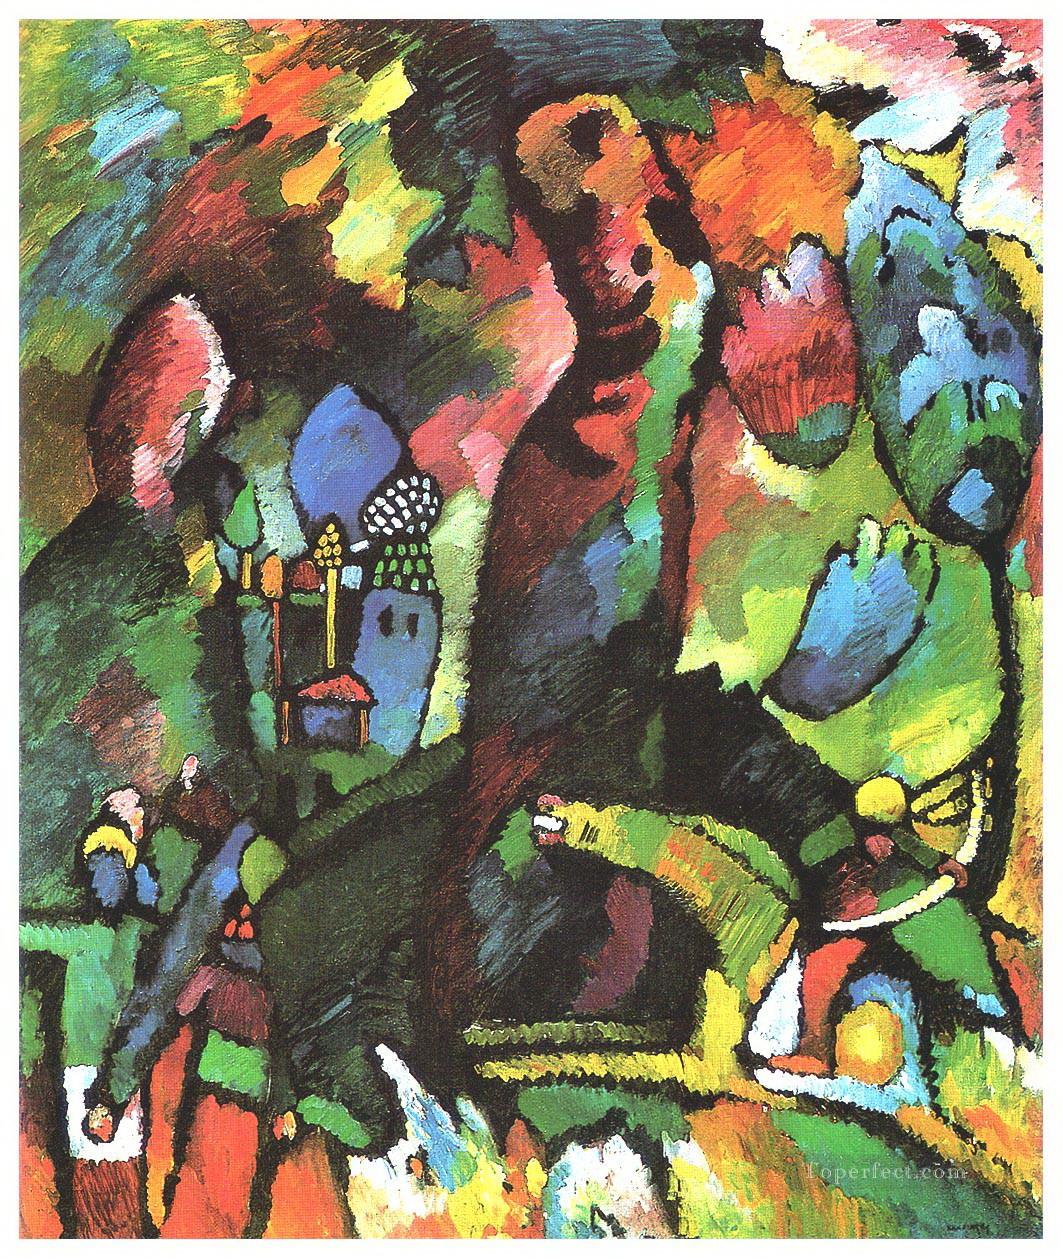 Cuadro con el arquero Wassily Kandinsky Pintura al óleo